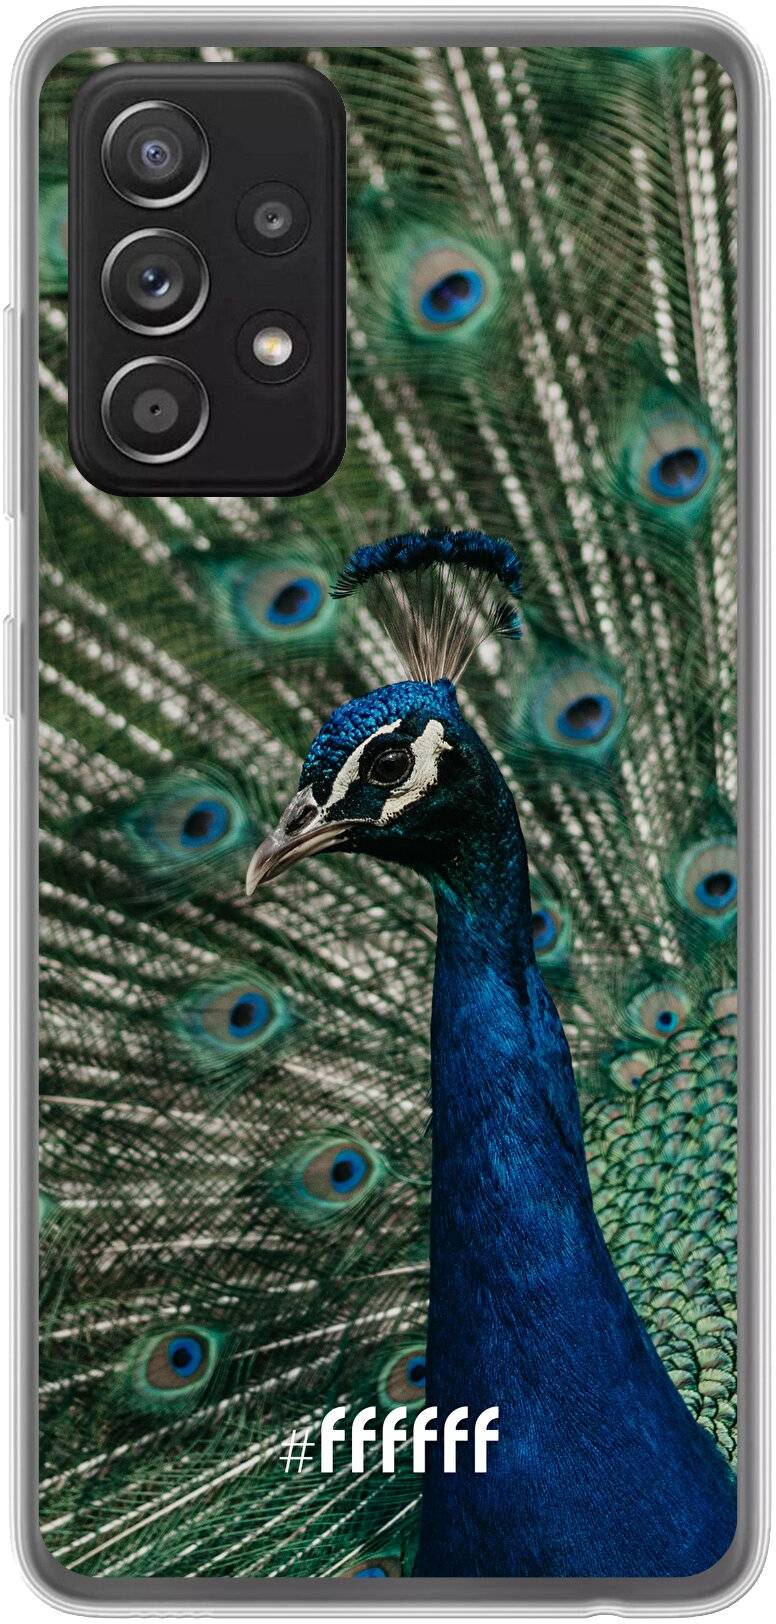 Peacock Galaxy A52